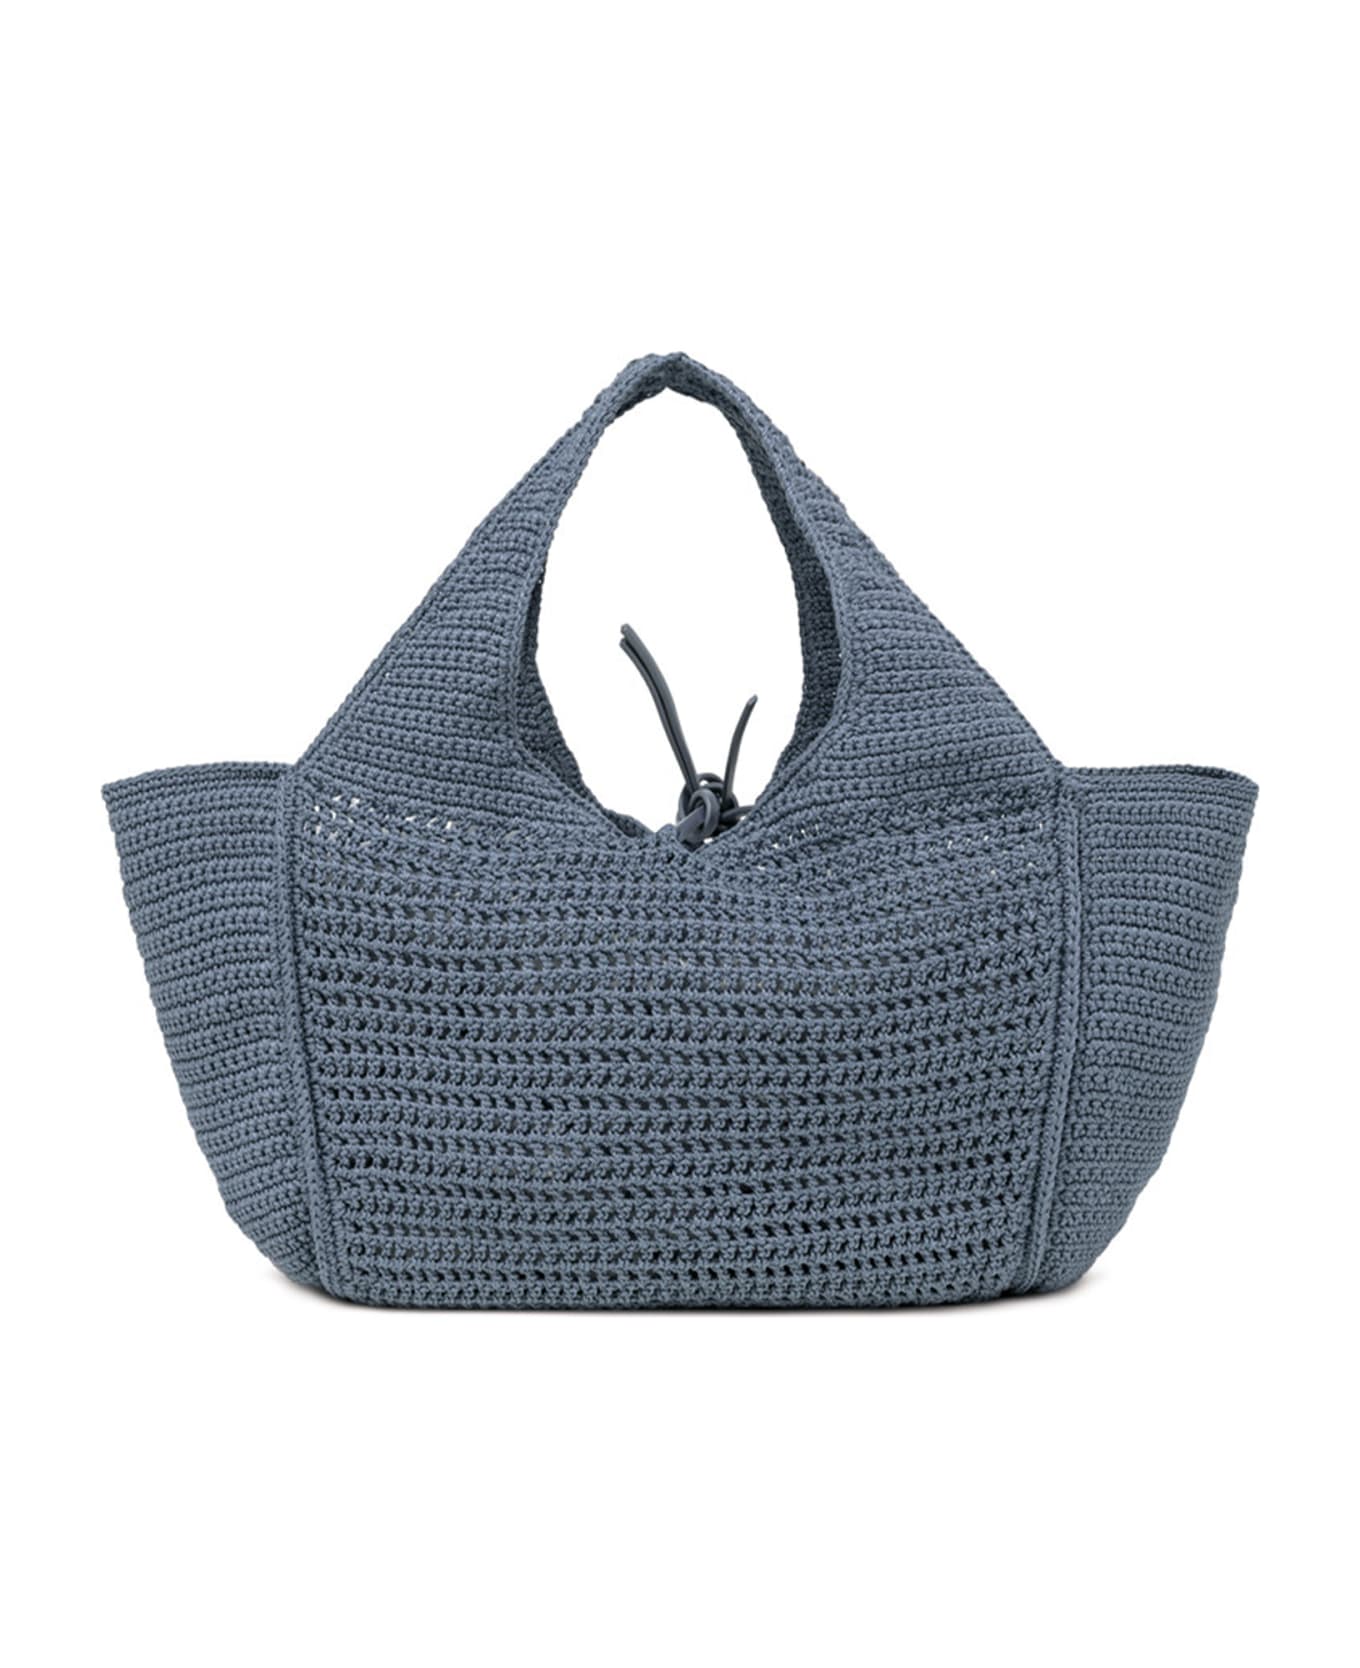 Gianni Chiarini Euforia Bluette Shopping Bag In Crochet Fabric - ARTICO